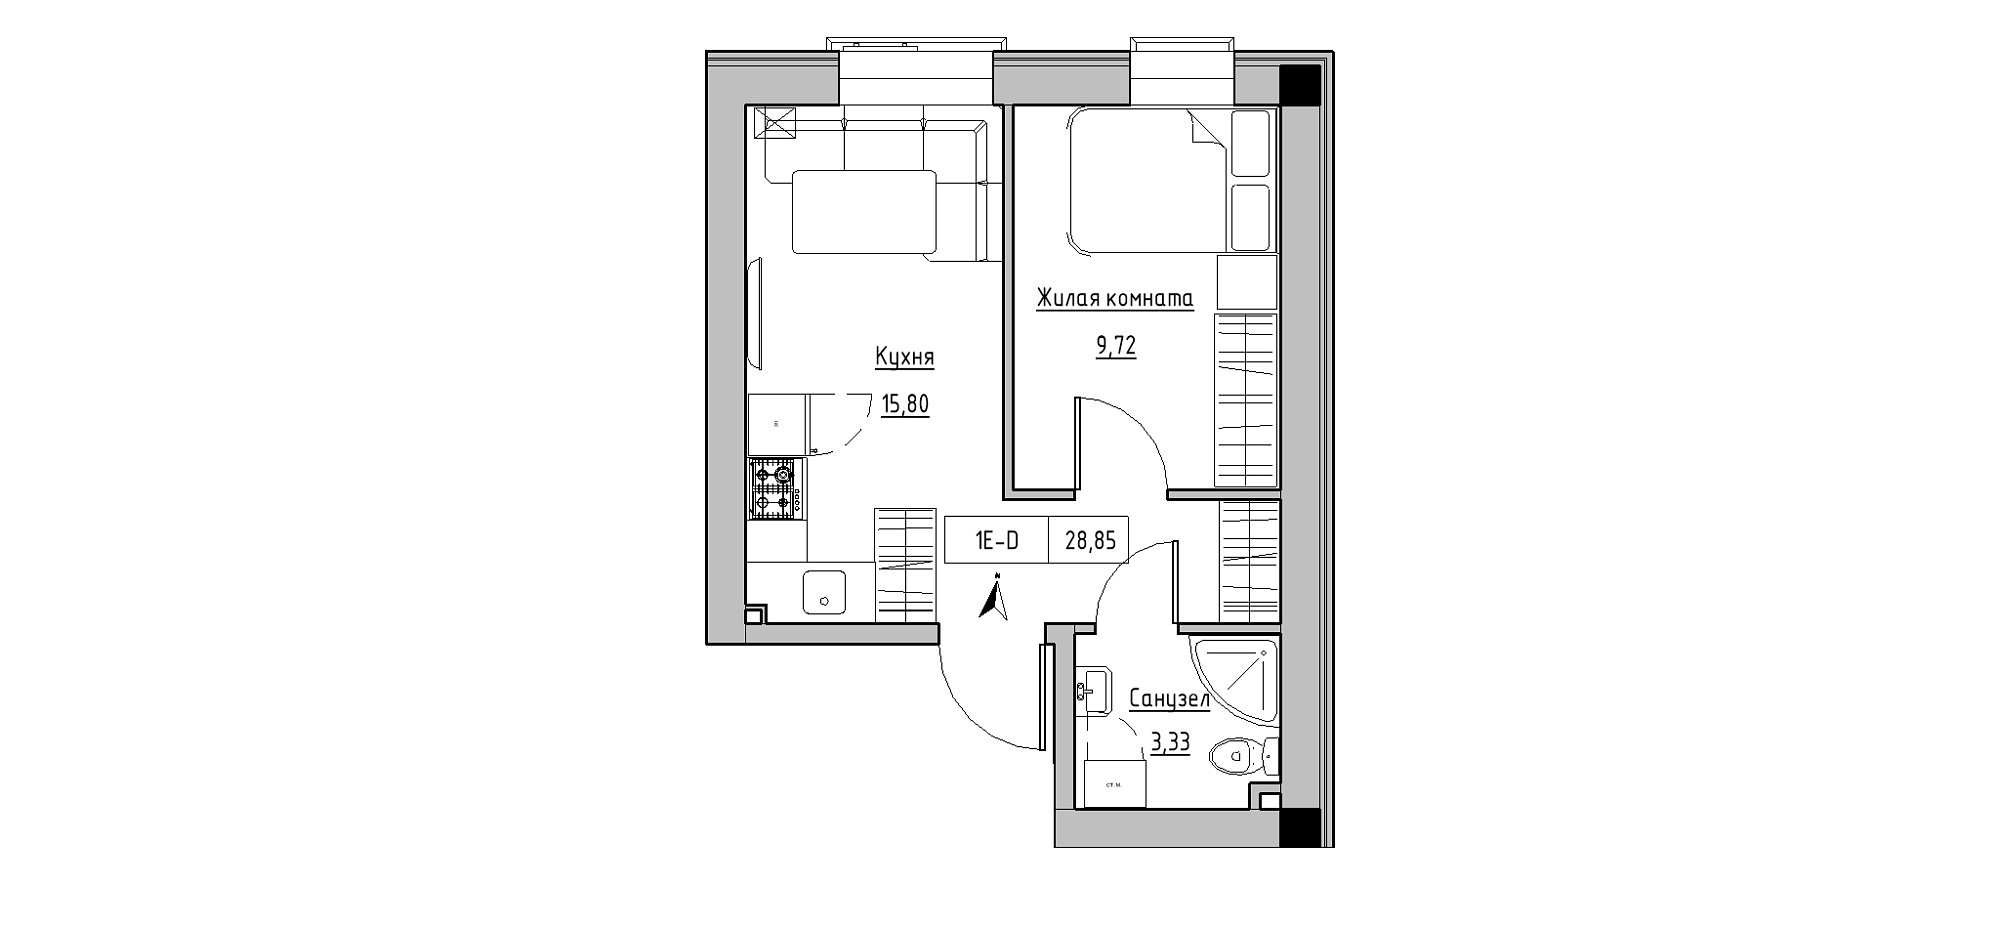 Планування 1-к квартира площею 28.85м2, KS-020-02/0002.